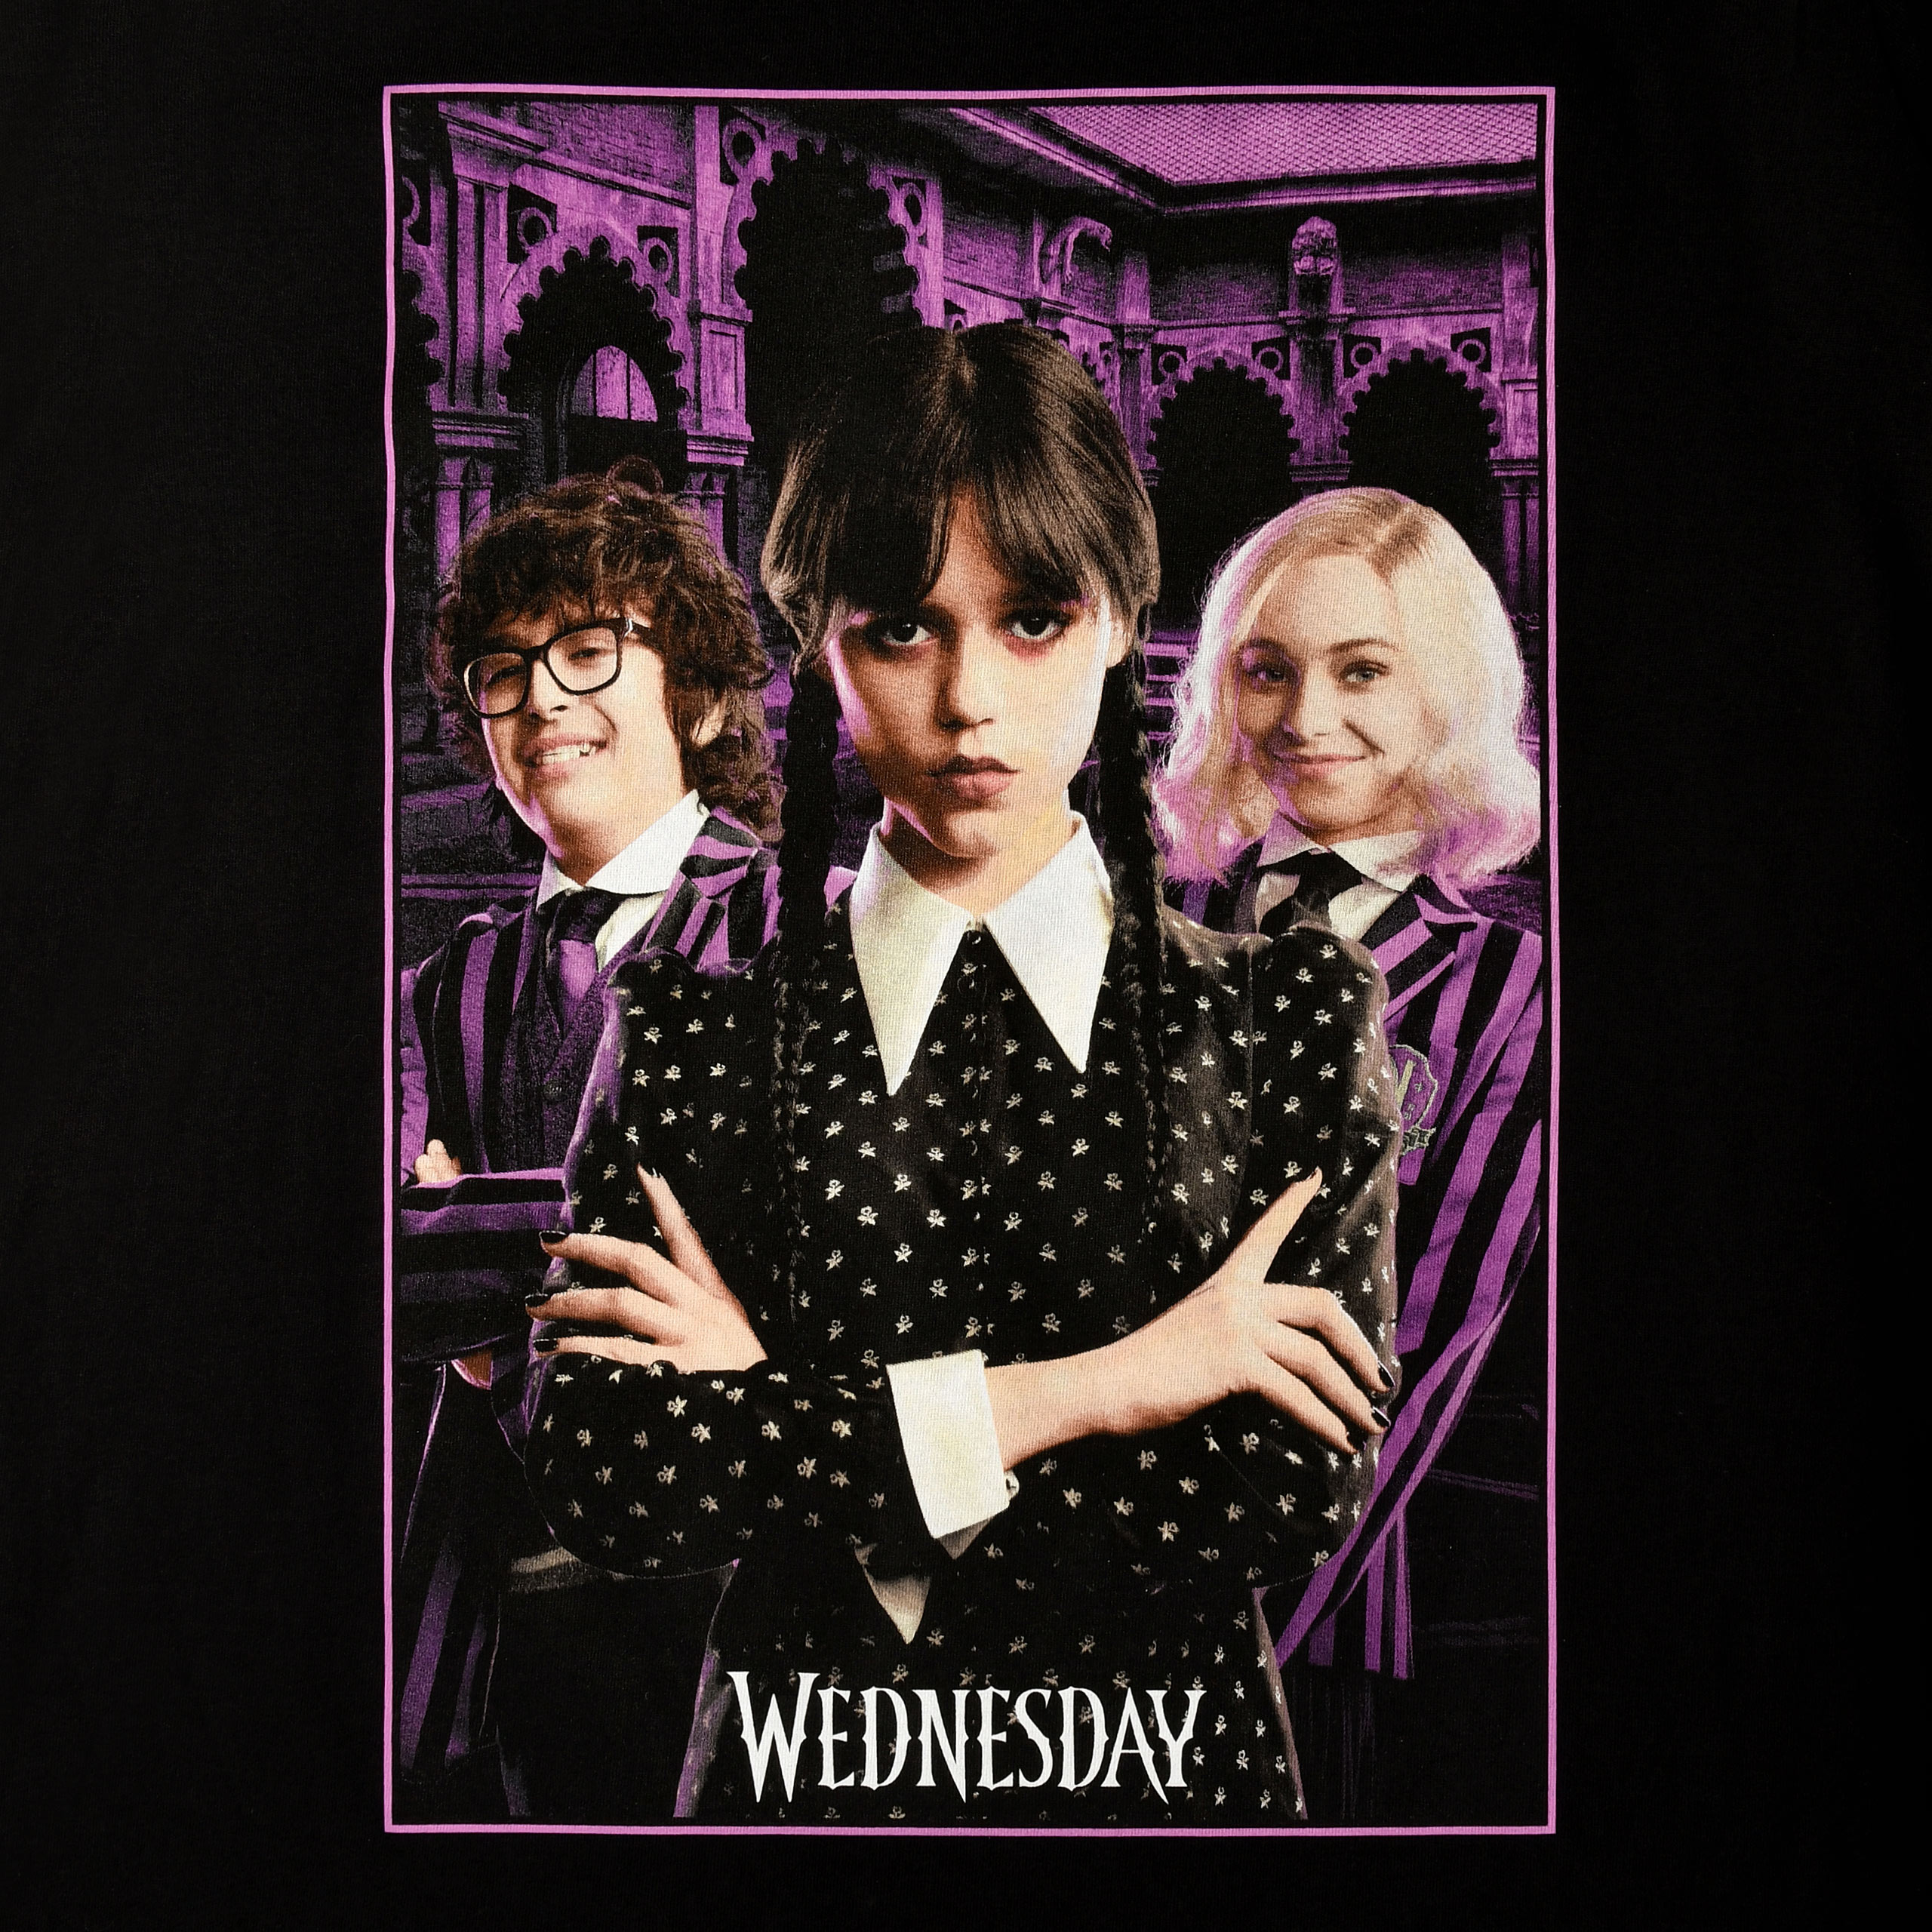 Wednesday mit Enid und Eugene Collage T-Shirt schwarz